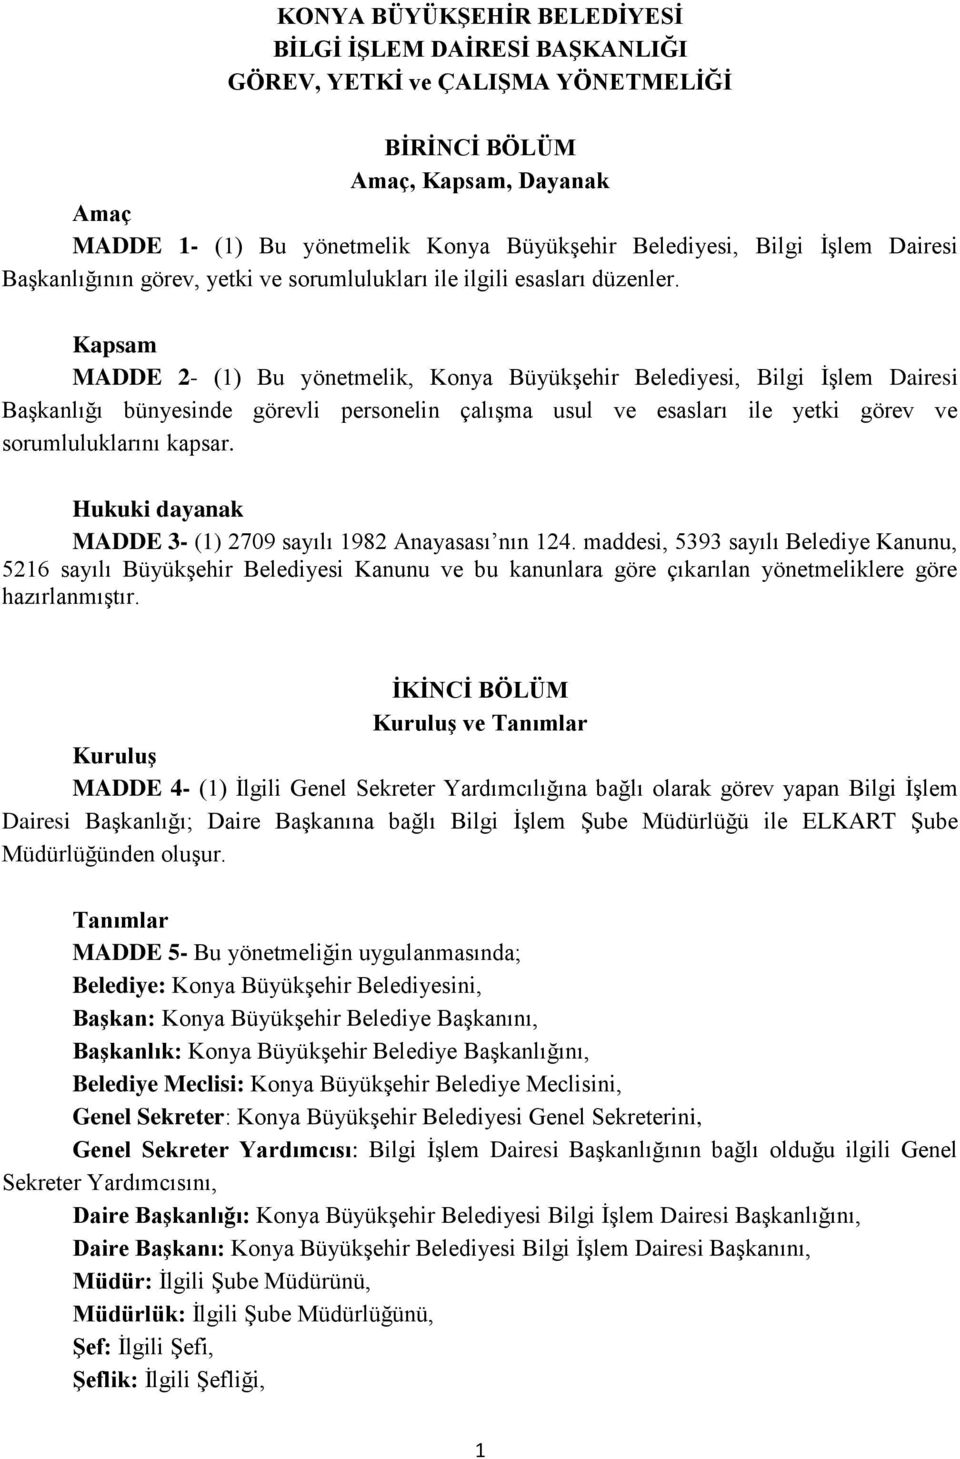 Kapsam MADDE 2- (1) Bu yönetmelik, Konya Büyükşehir Belediyesi, Bilgi İşlem Dairesi Başkanlığı bünyesinde görevli personelin çalışma usul ve esasları ile yetki görev ve sorumluluklarını kapsar.